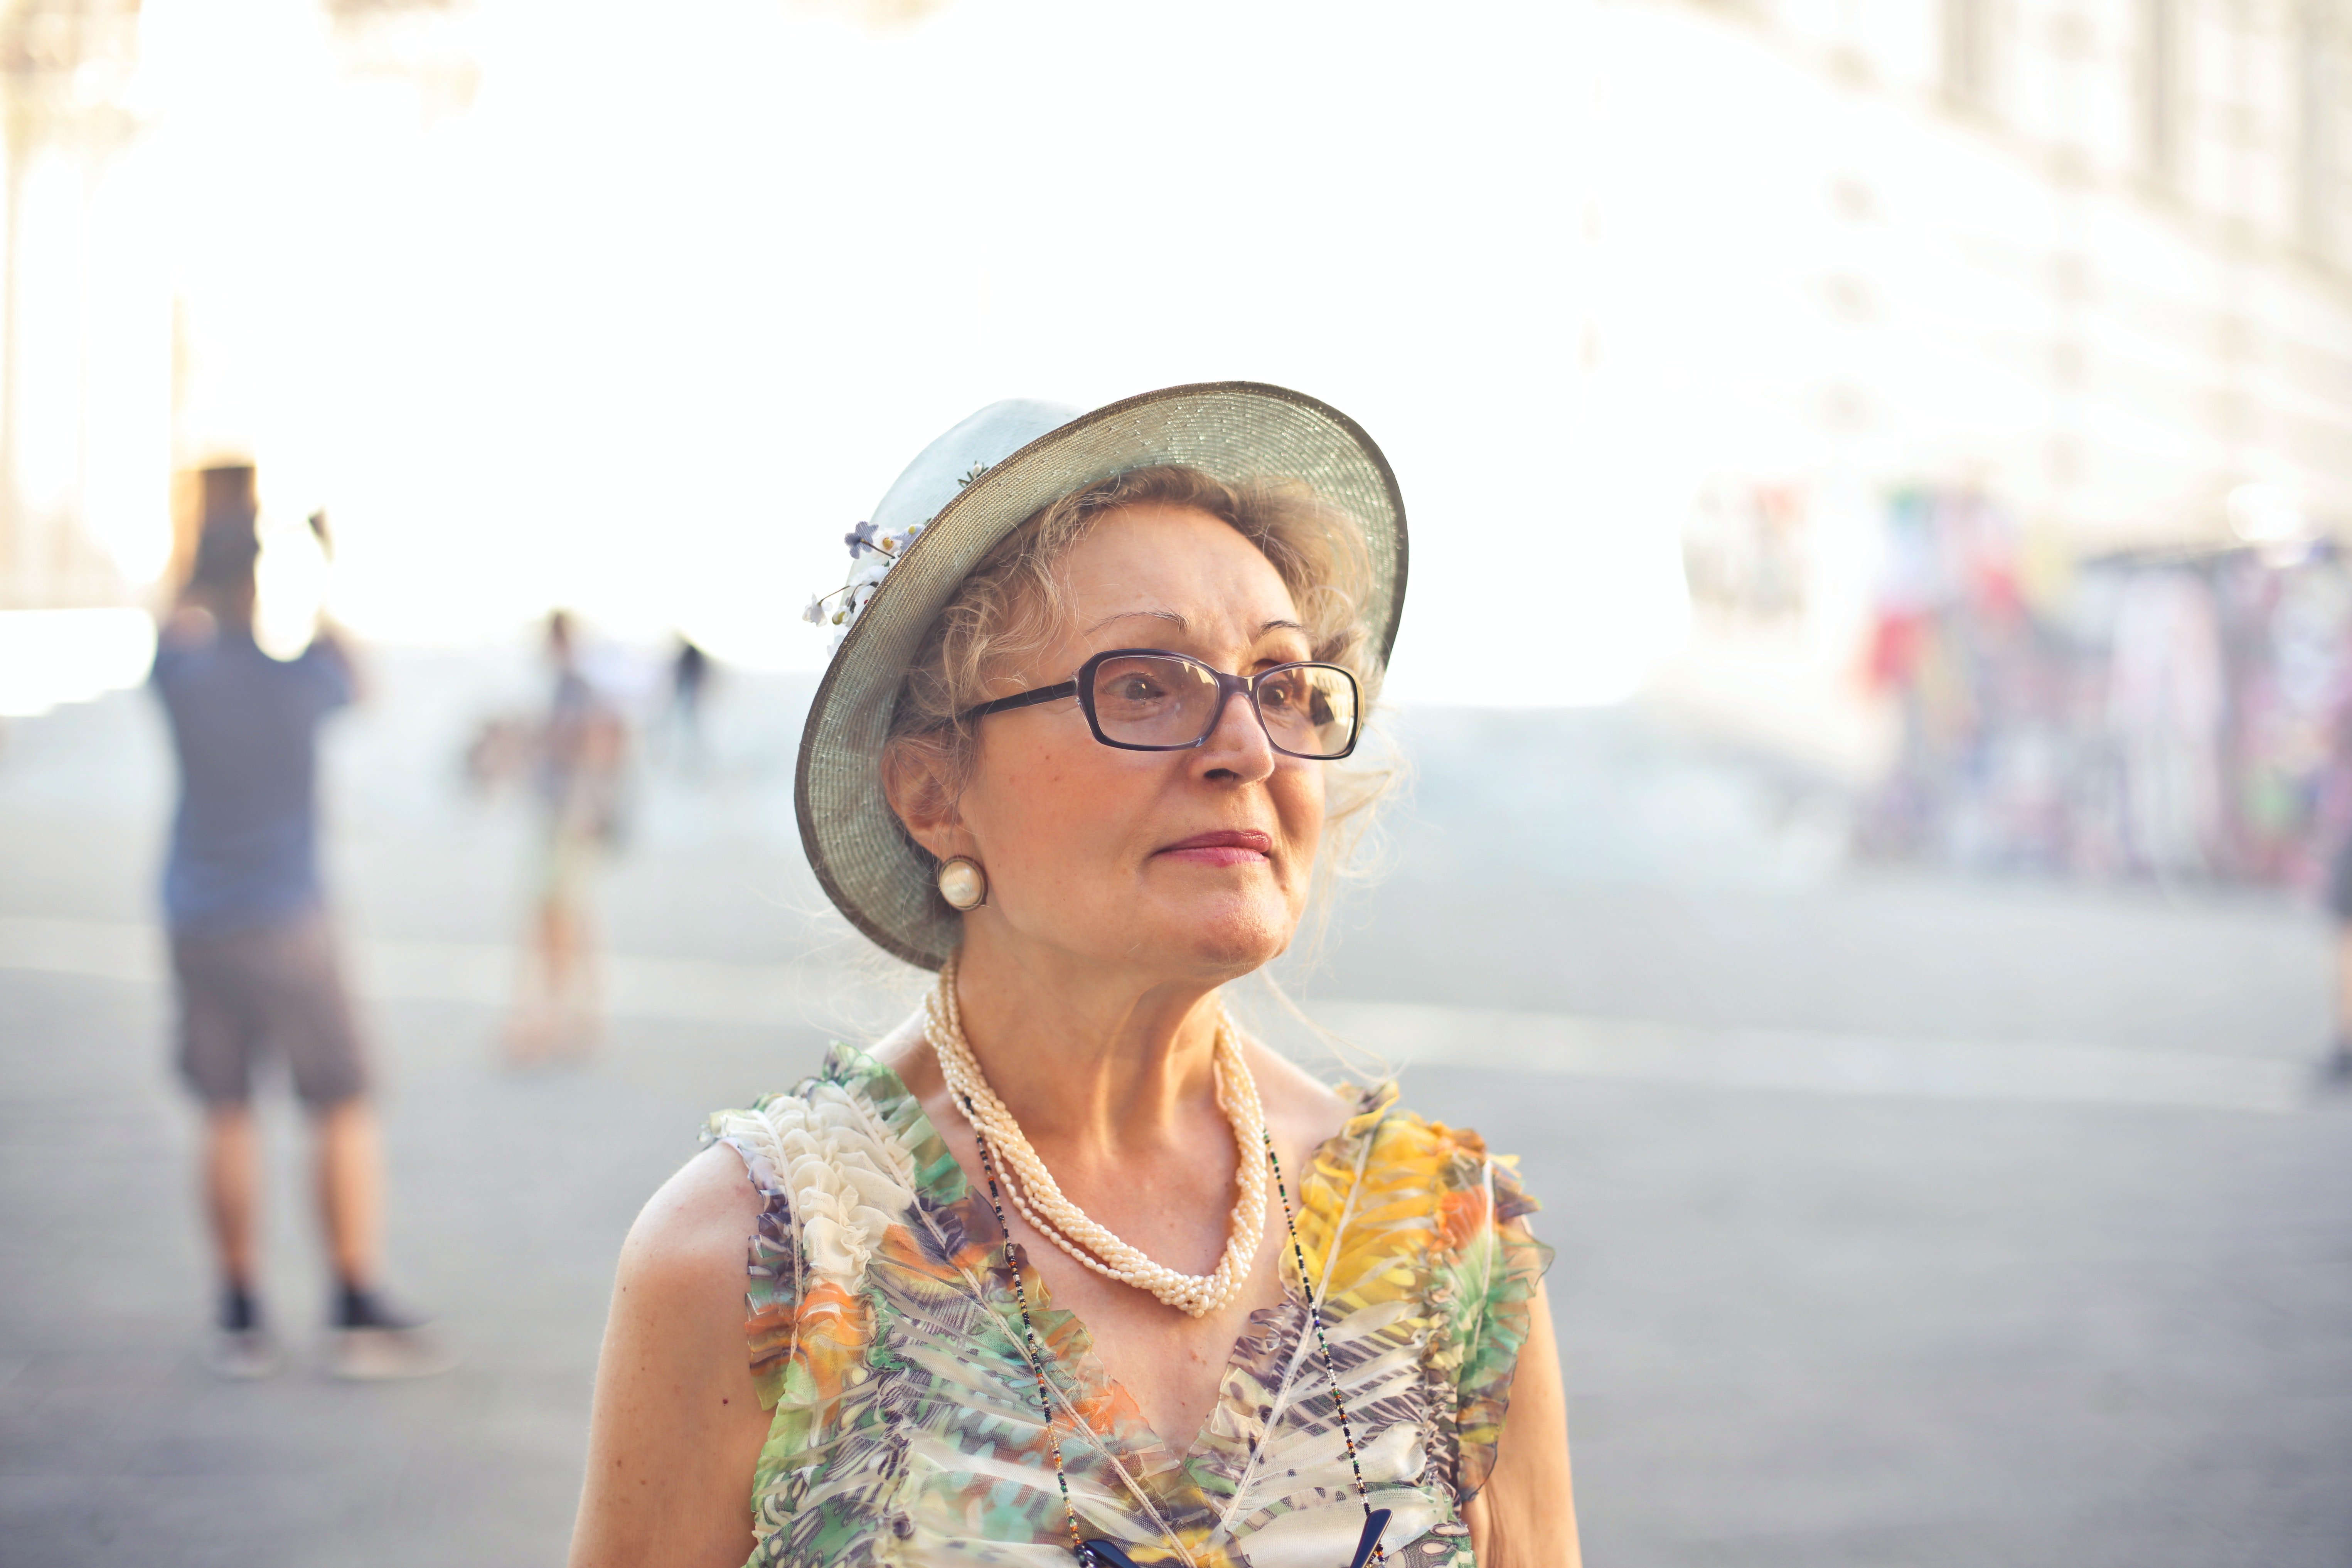 An older woman. | Source: Pexels/Andrea Piacquadio